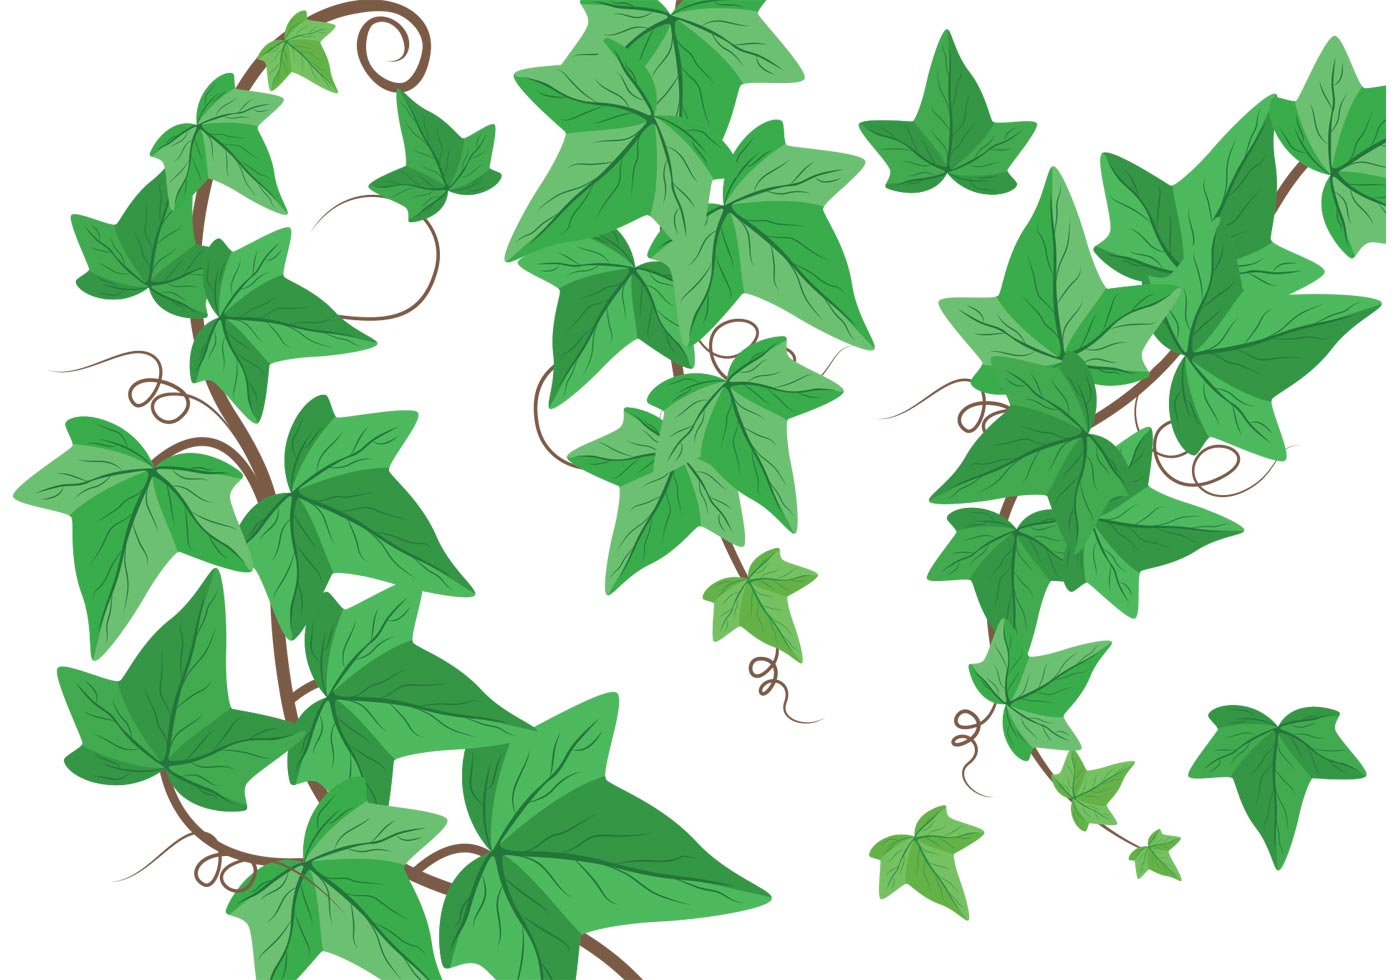 Ivy Leaf Vector at GetDrawings Free download